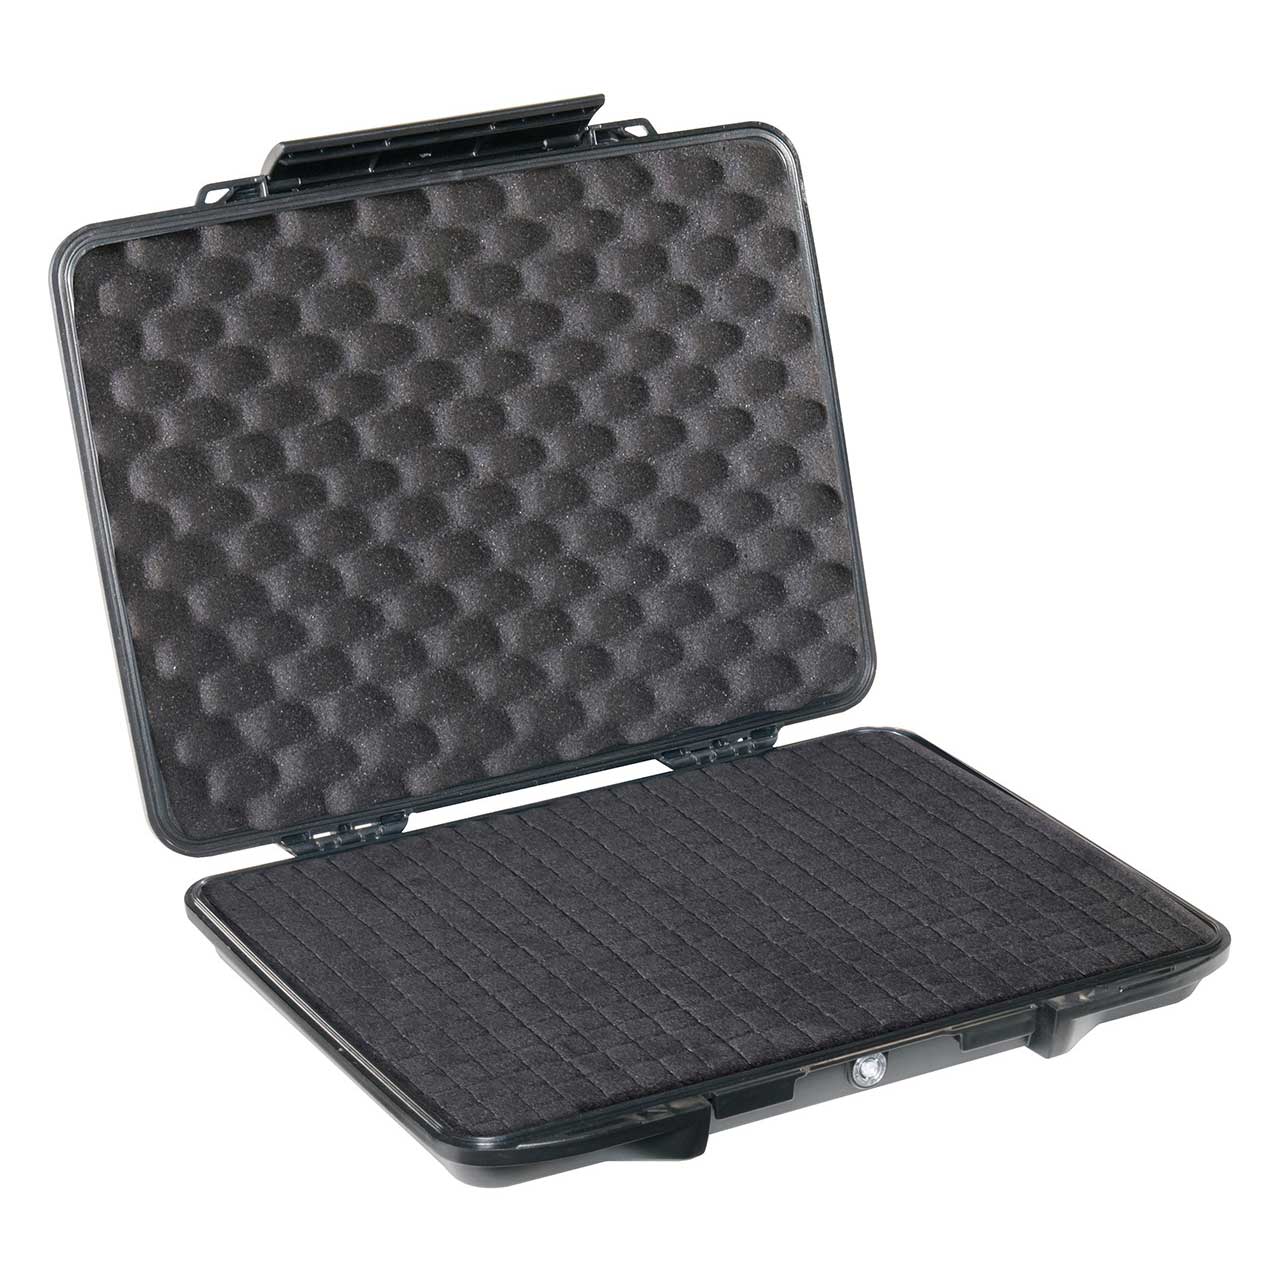 Pelican 1085 HardBack Laptop Case with Foam